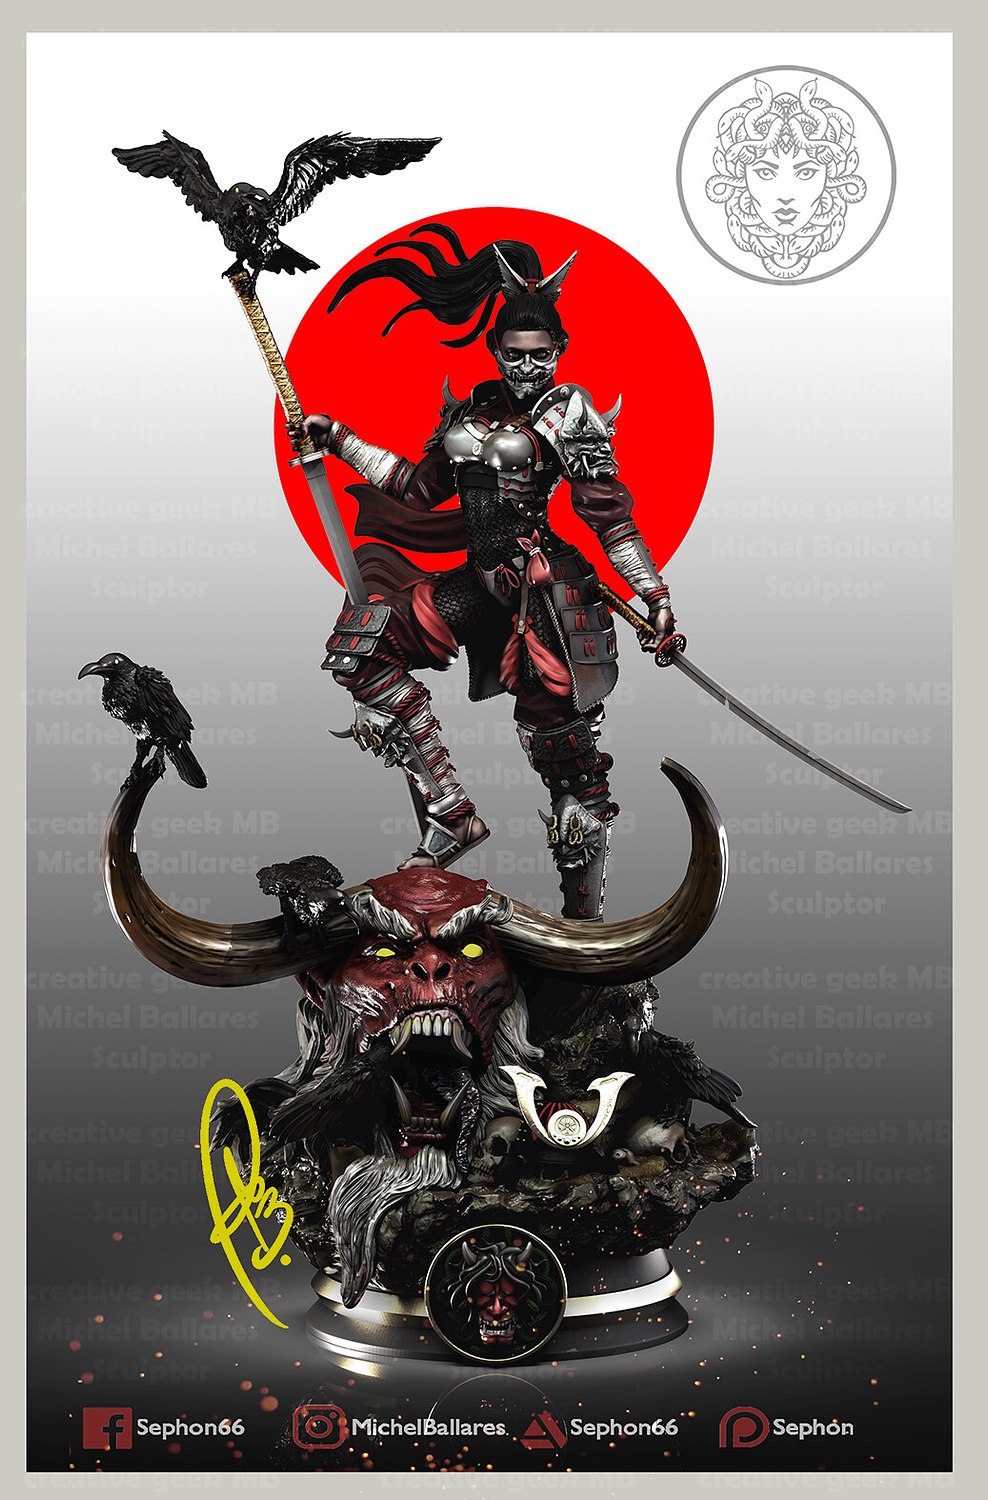 Urara The Samurai Warrior Fanart